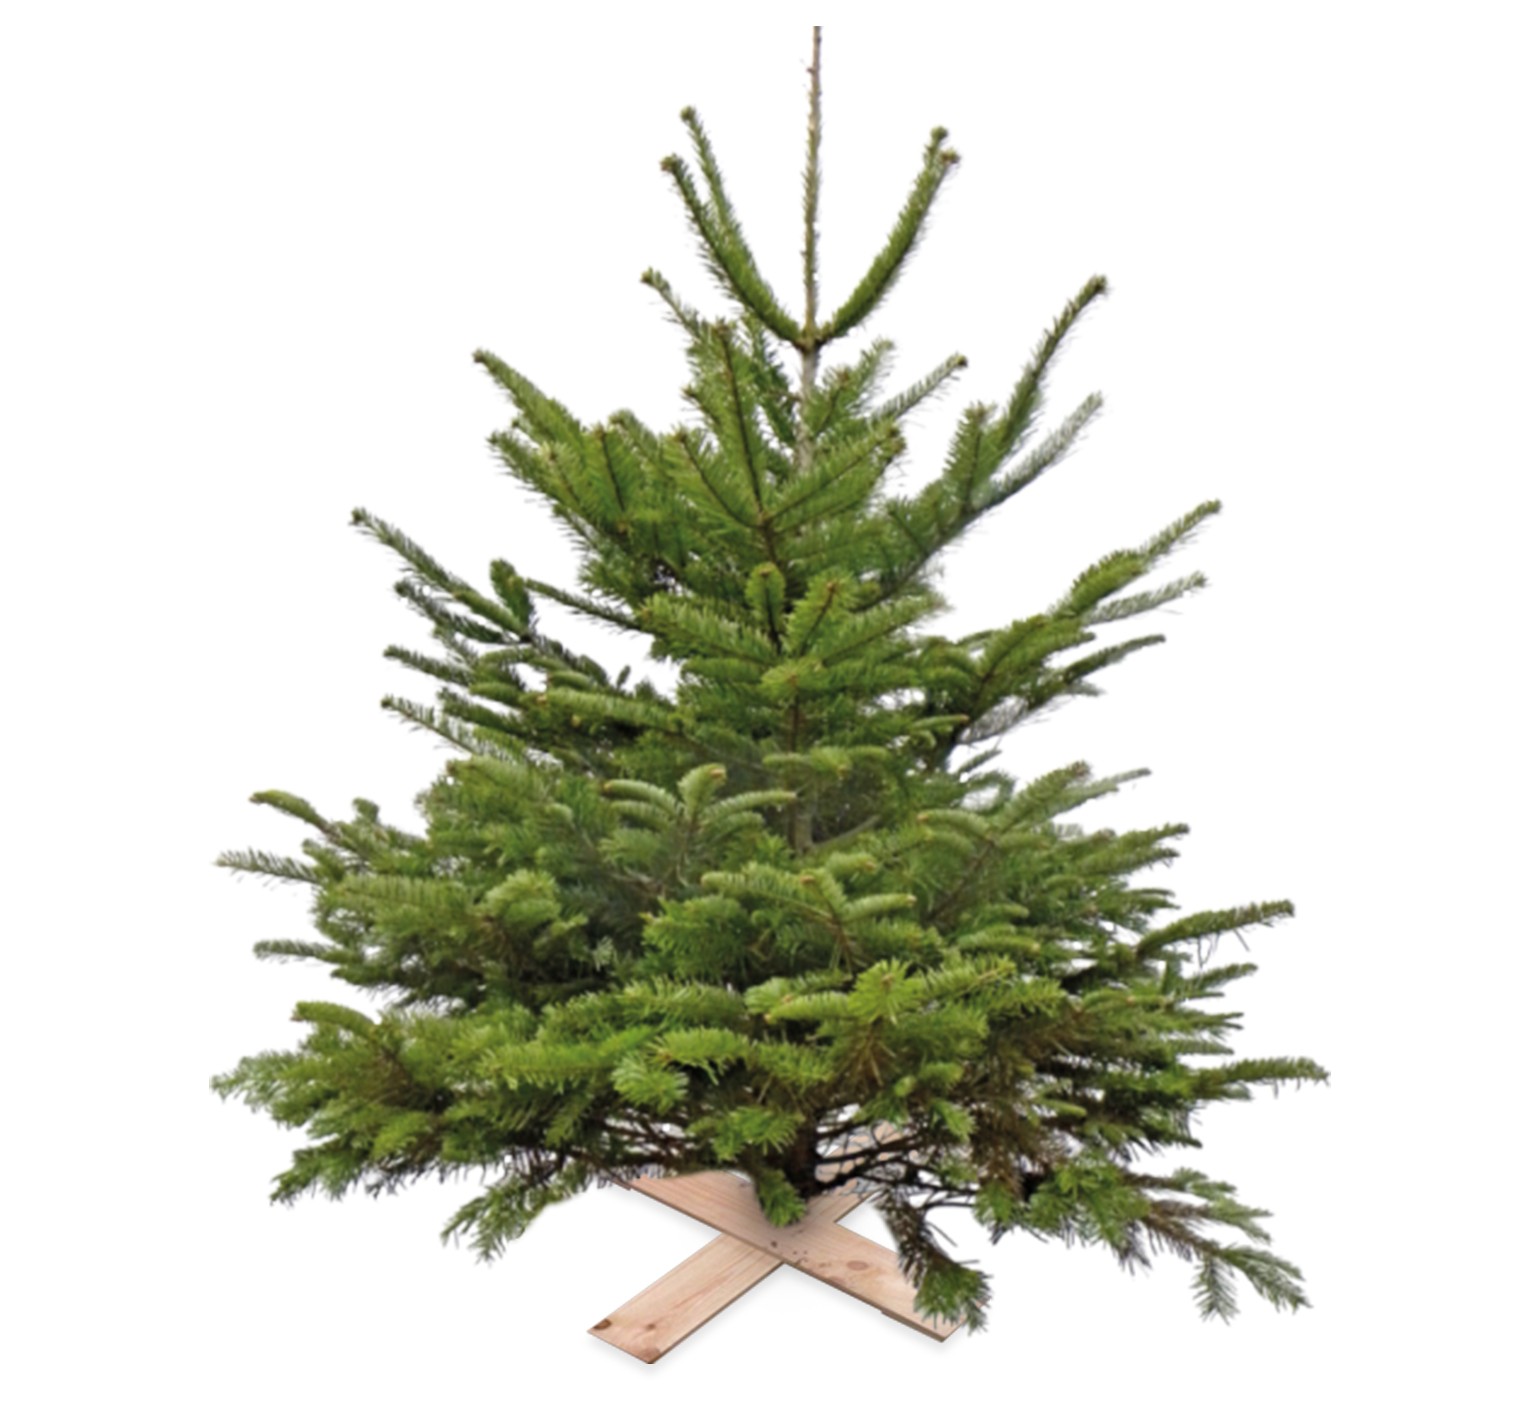 Super Actie Kerstboom Nordman Gezaagd 125 - 150 cm excl pot/kruisvoet - Warentuin Natuurlijk